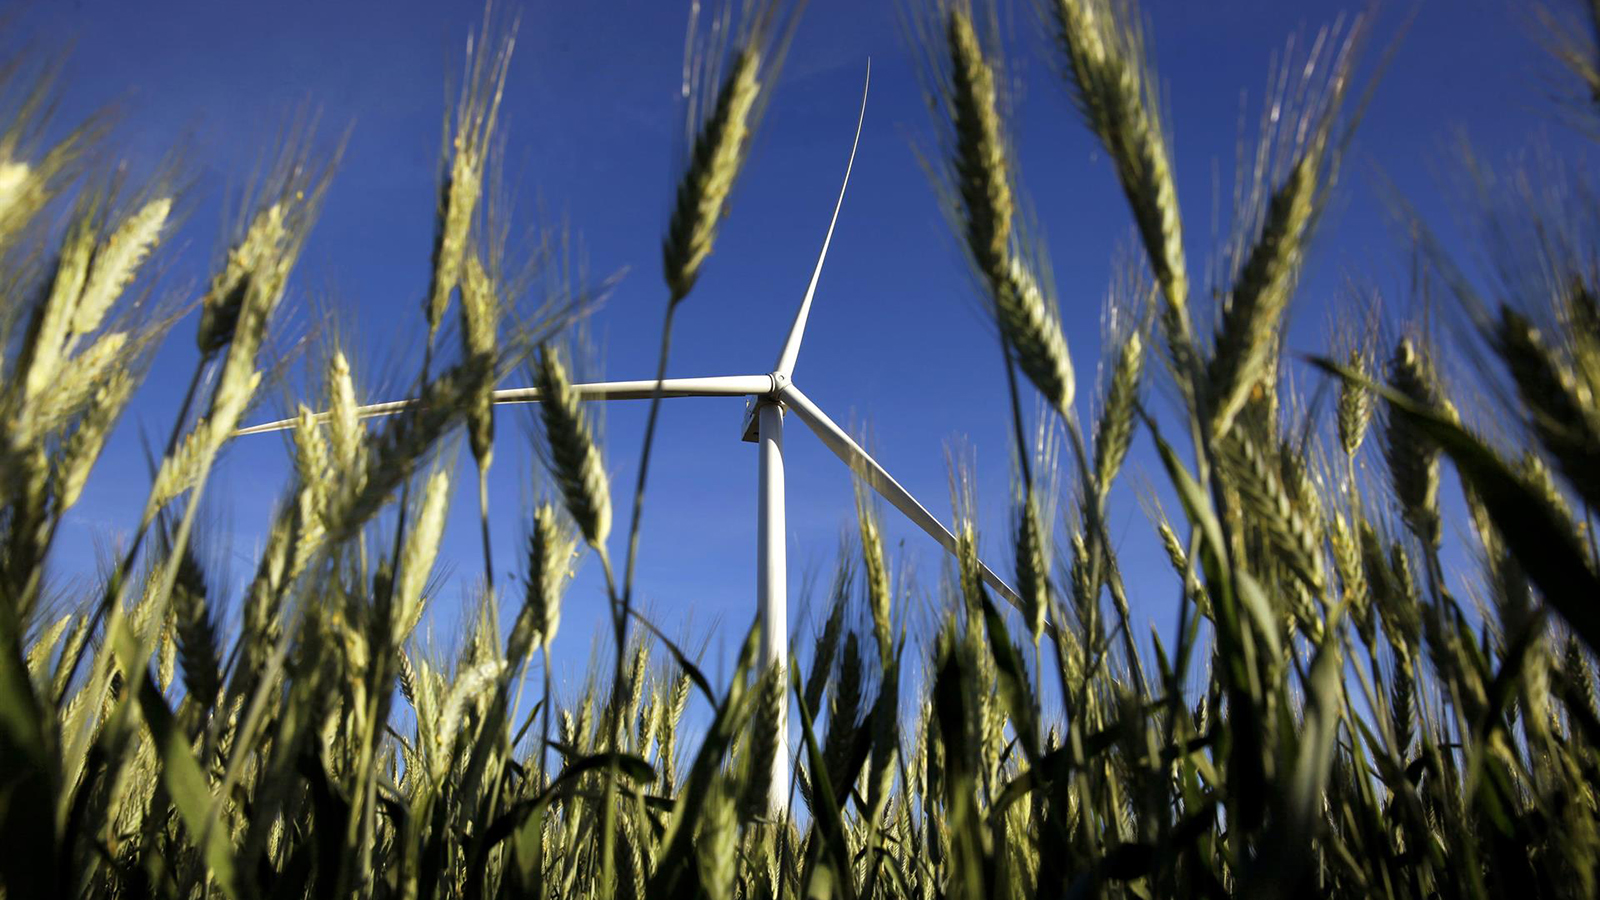 CIP firma con GE Vernova un megacontrato de 700 millones para las turbinas de un parque eólico en España.